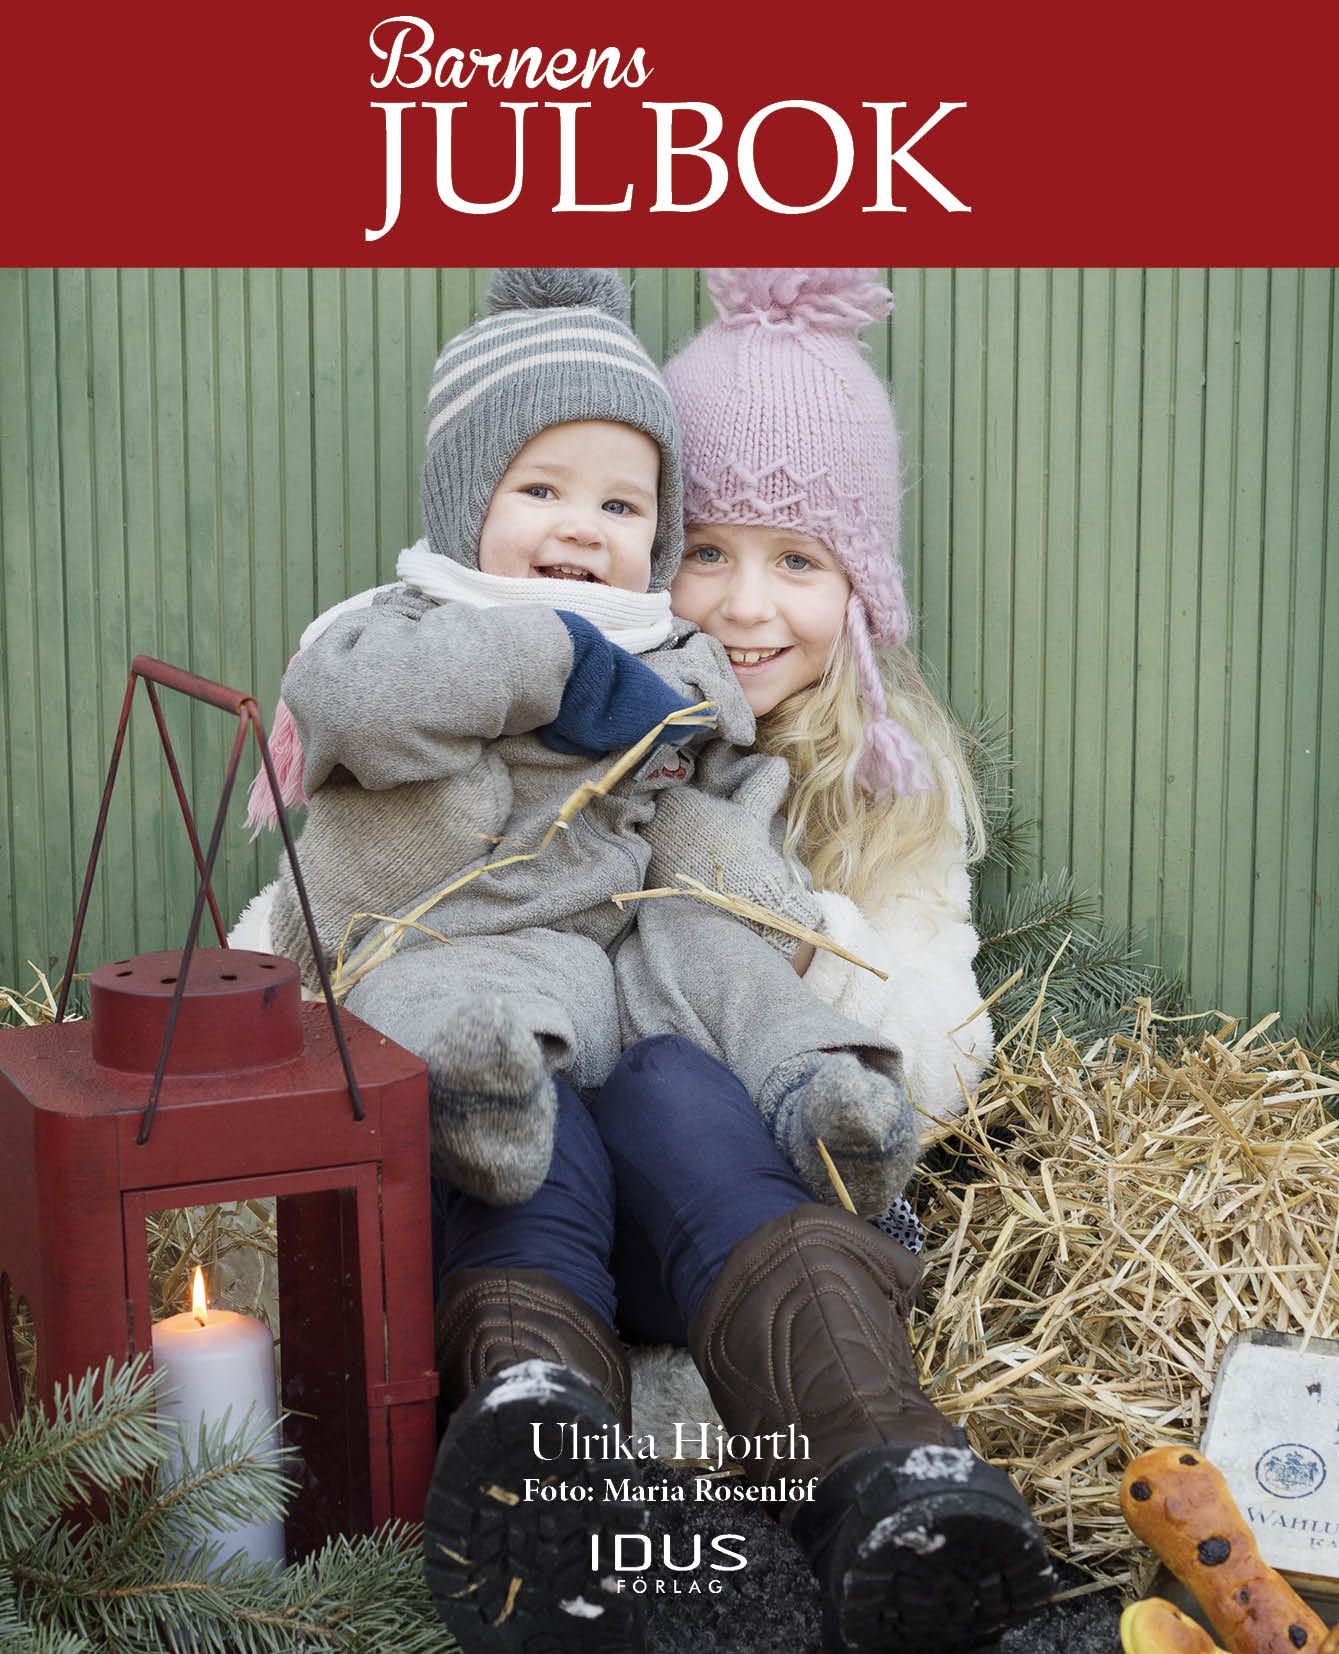 Barnens julbok, e-bok av Ulrika Hjorth